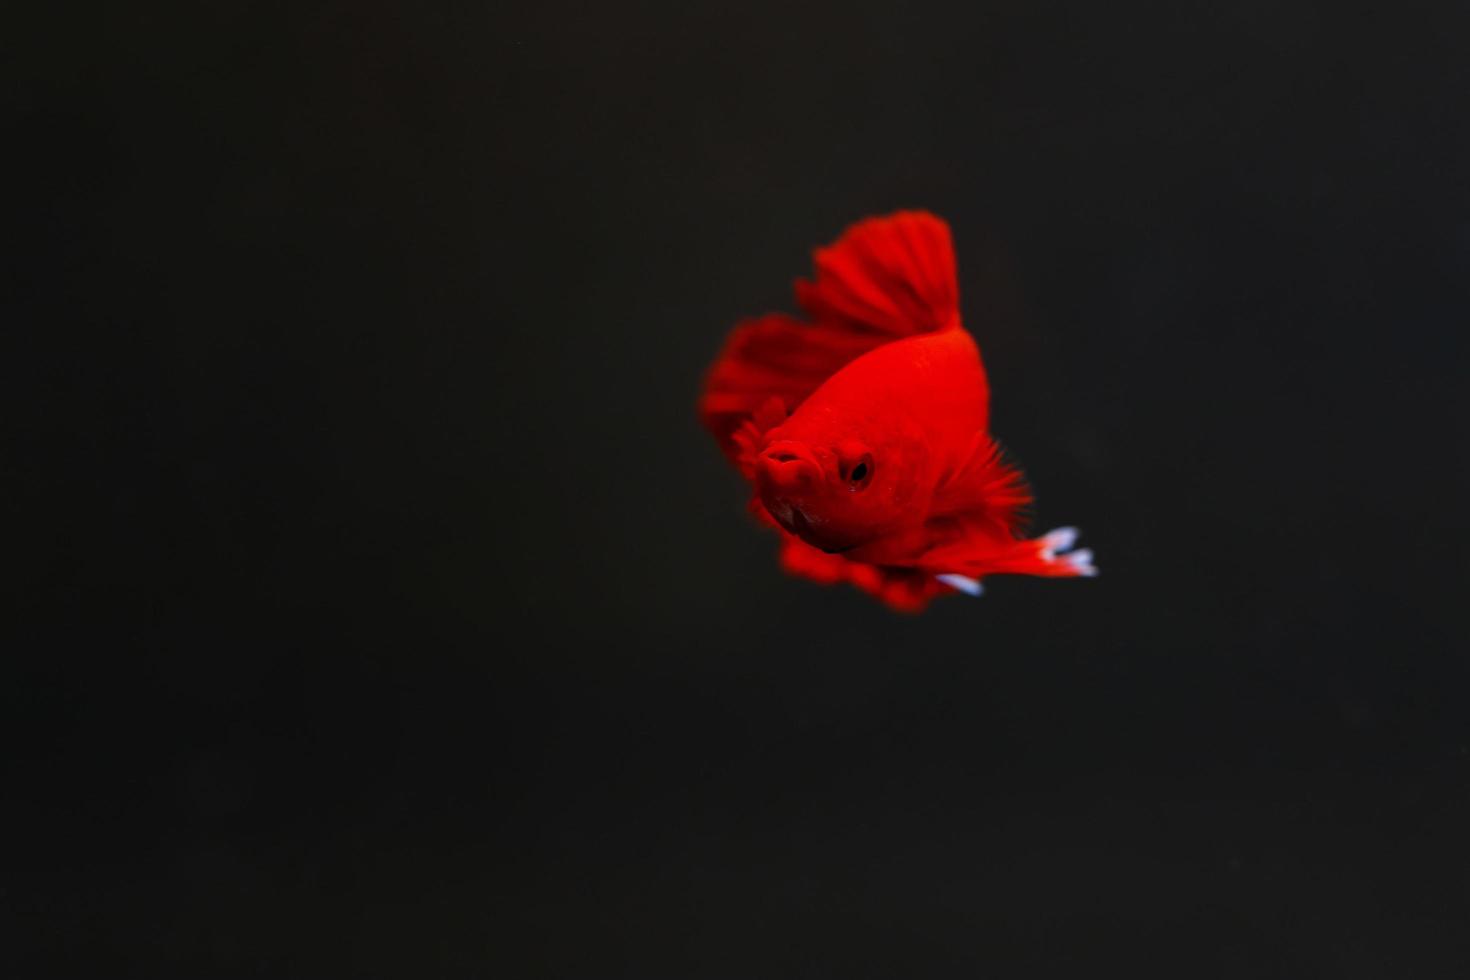 poisson betta super rouge avec un fond sombre. poisson combattant siamois couleur rouge uni splendide. photo